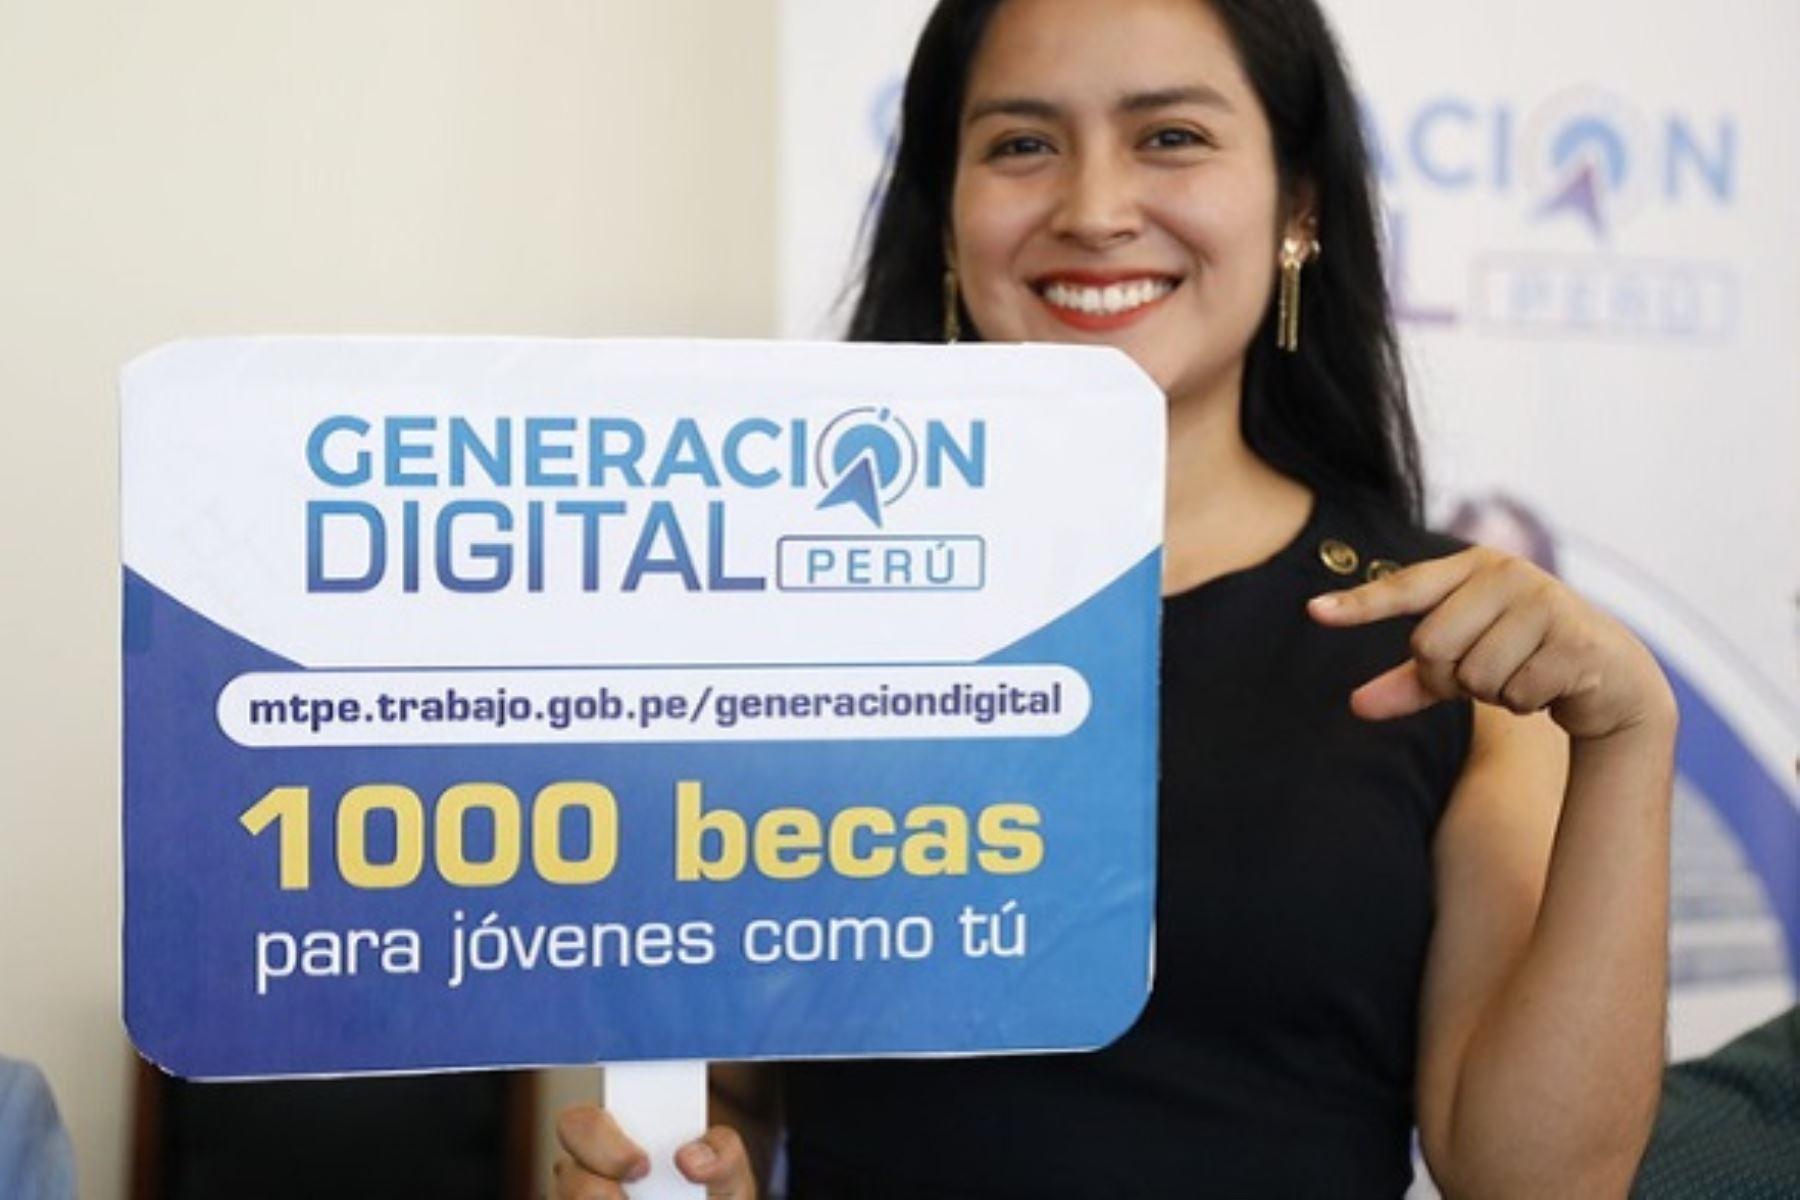 Jóvenes tendrán la oportunidad de acceder a 1,000 becas integrales para capacitarse digitalmente. Foto: Cortesía.